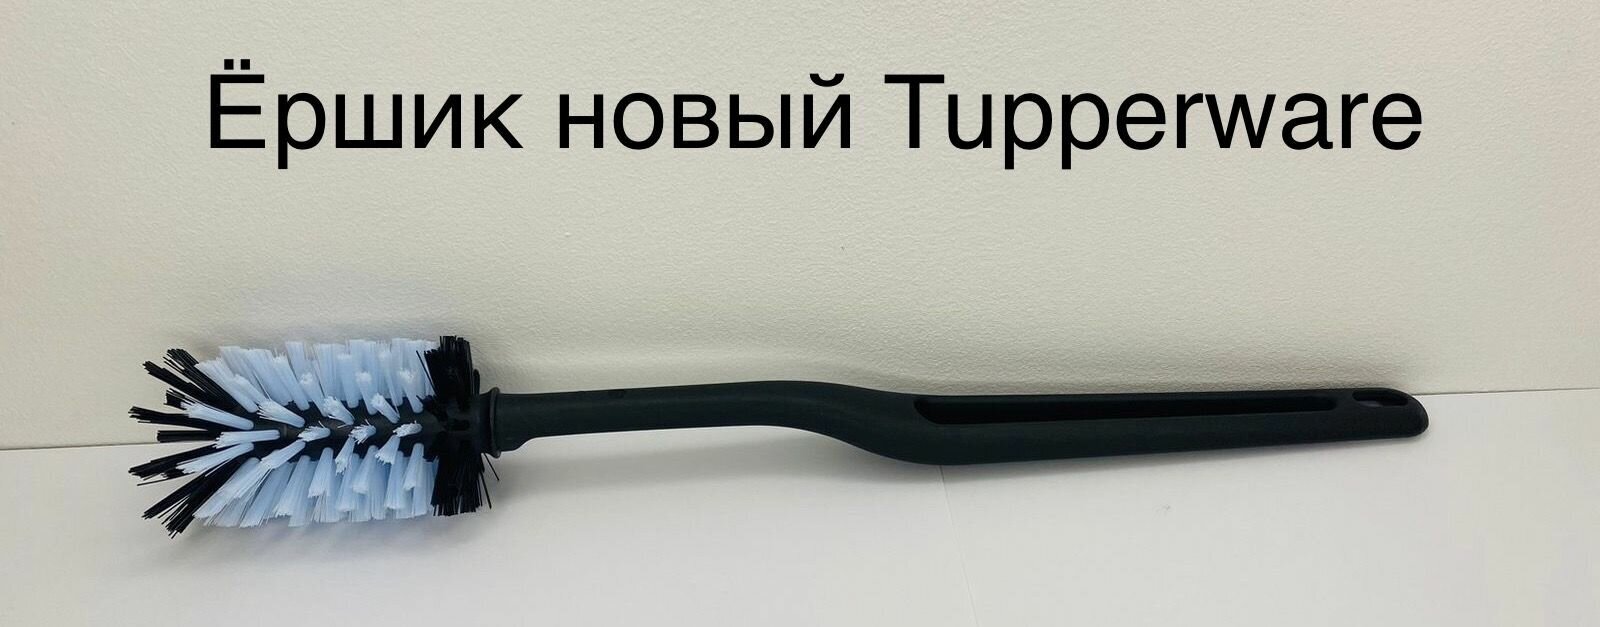 Ершик универсальный Новый Tupperware черный - фотография № 5